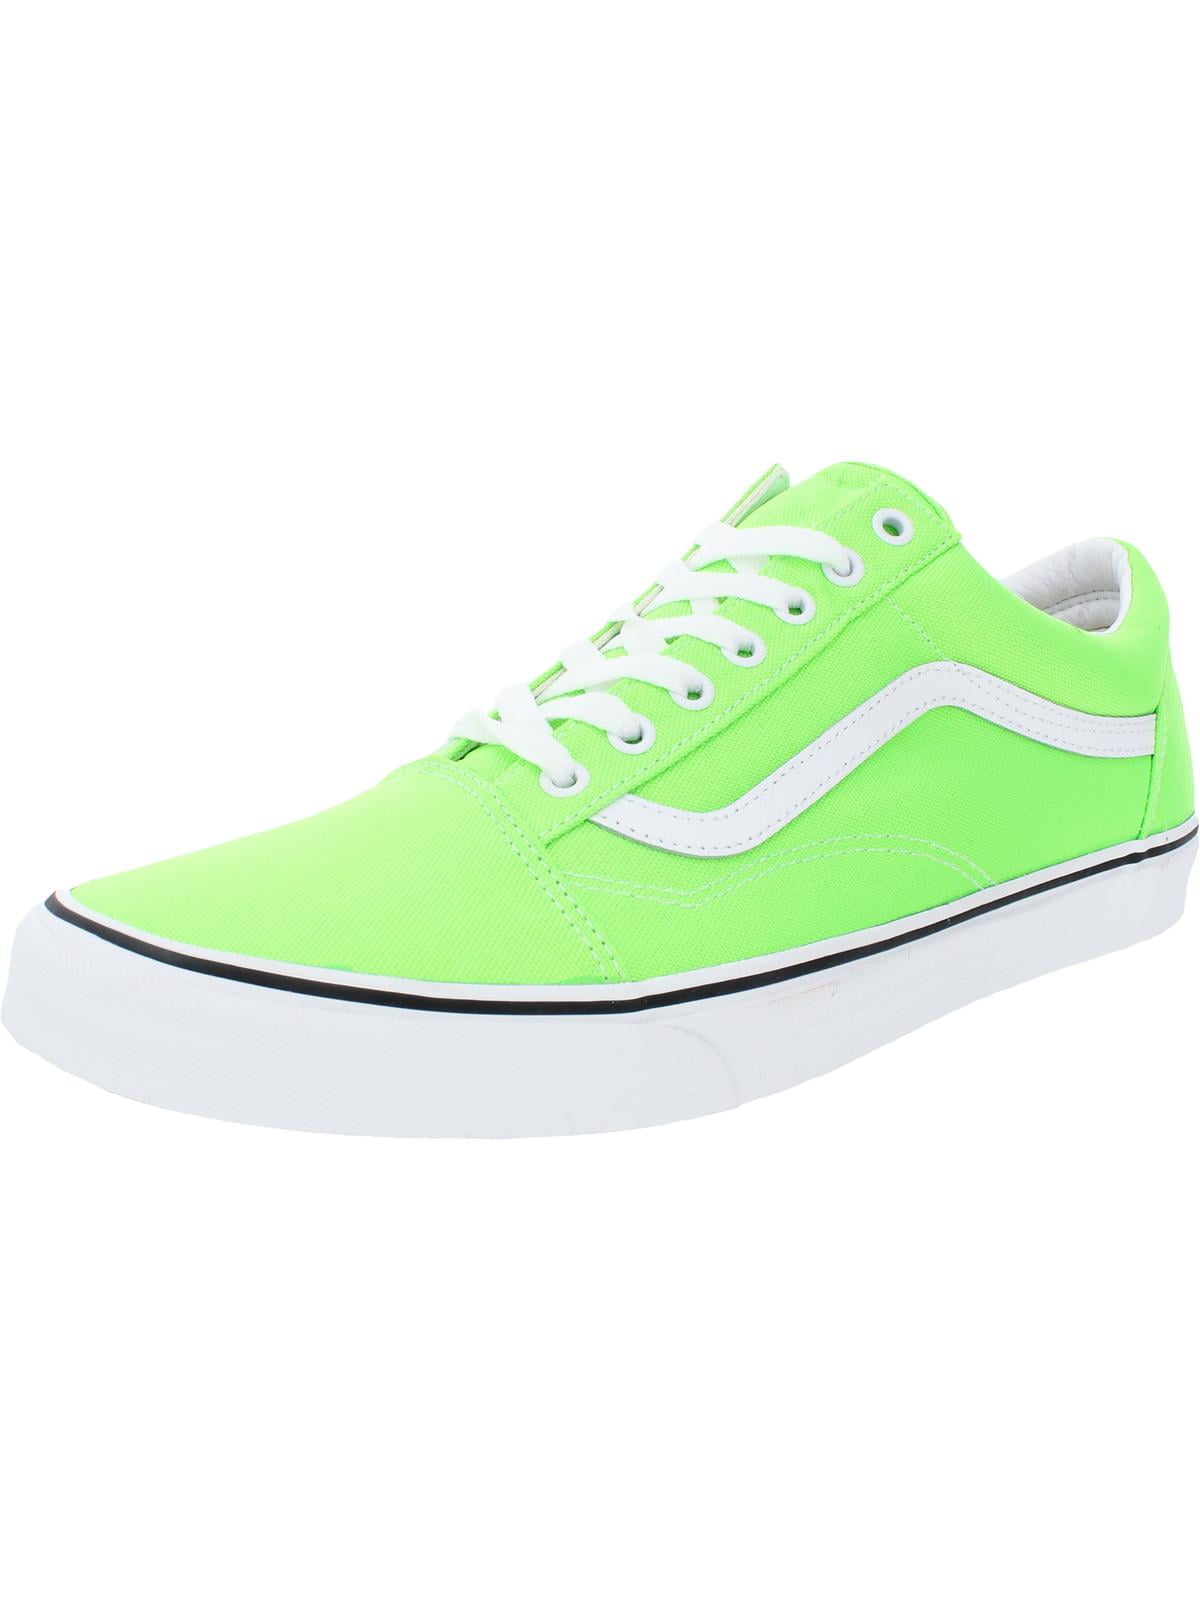 green vans sneakers